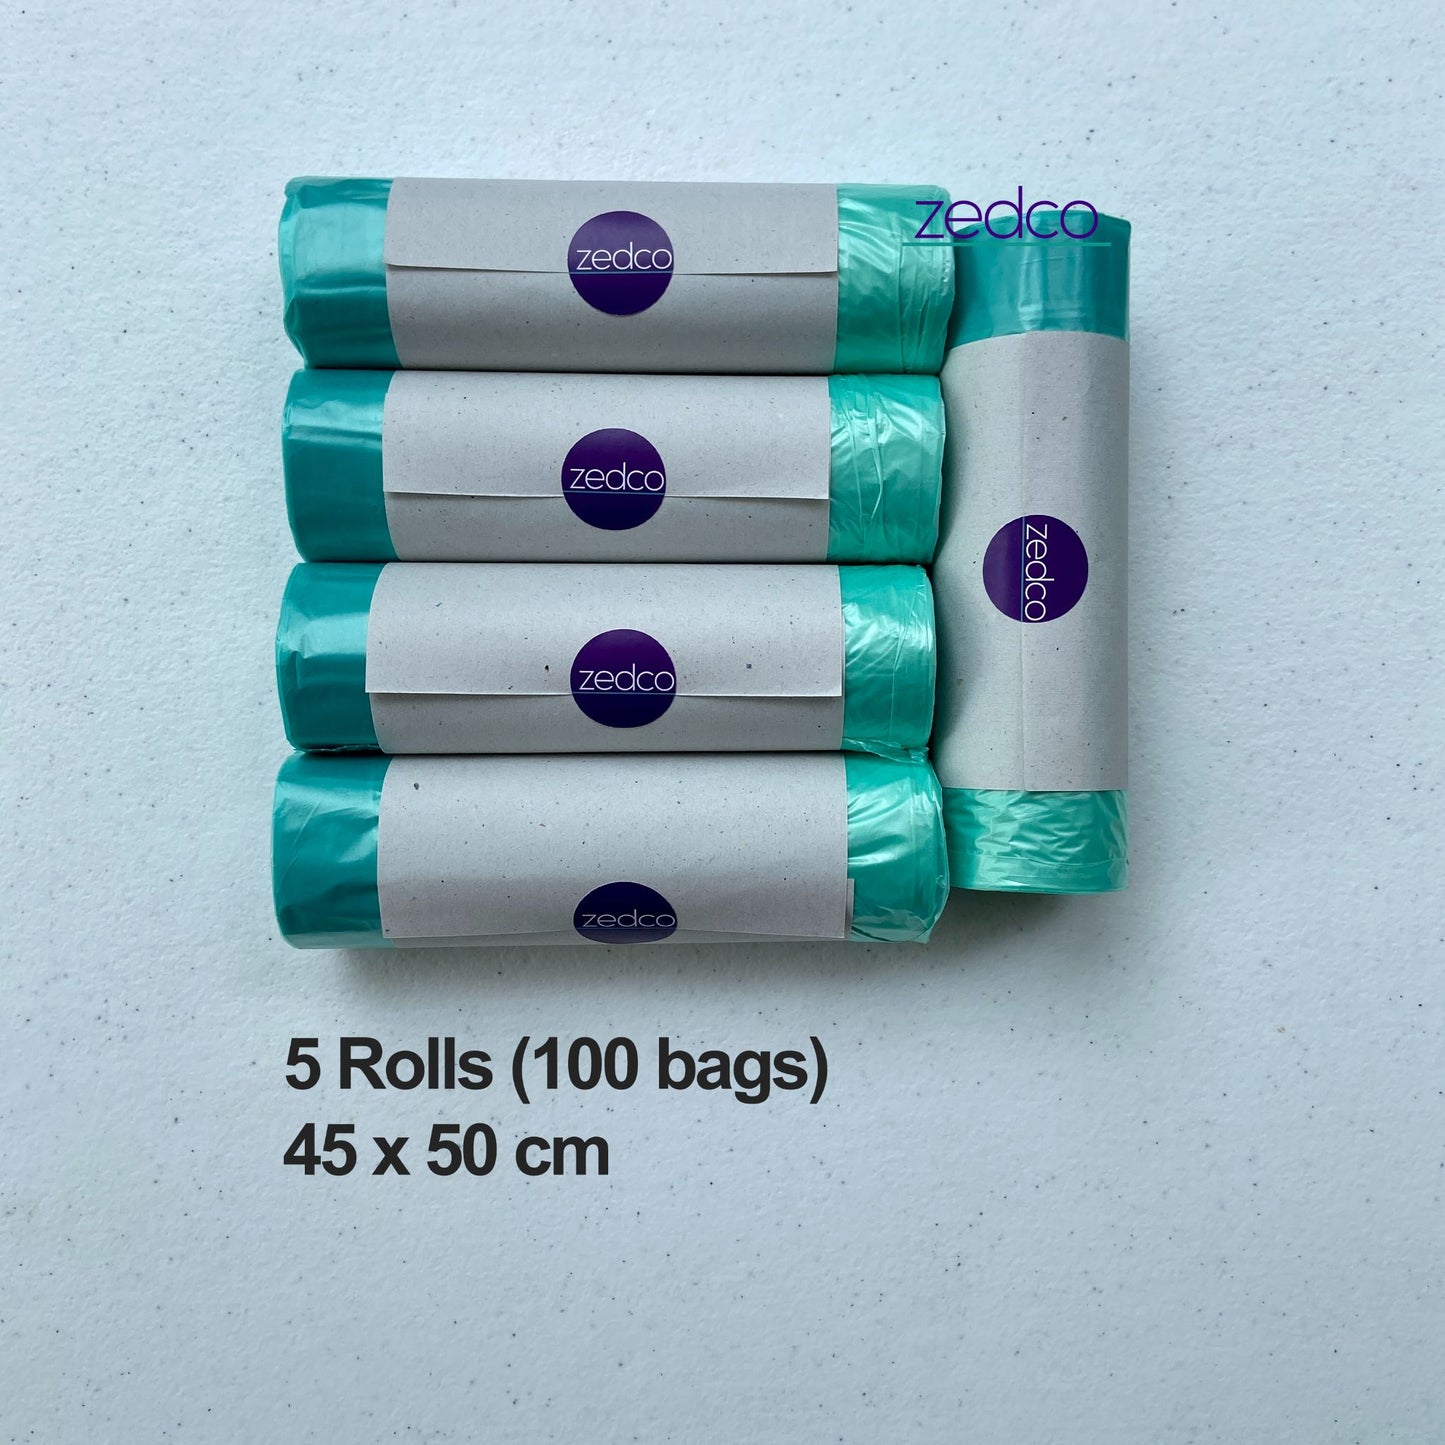 Biodegradable Drawstring Garbage Bag